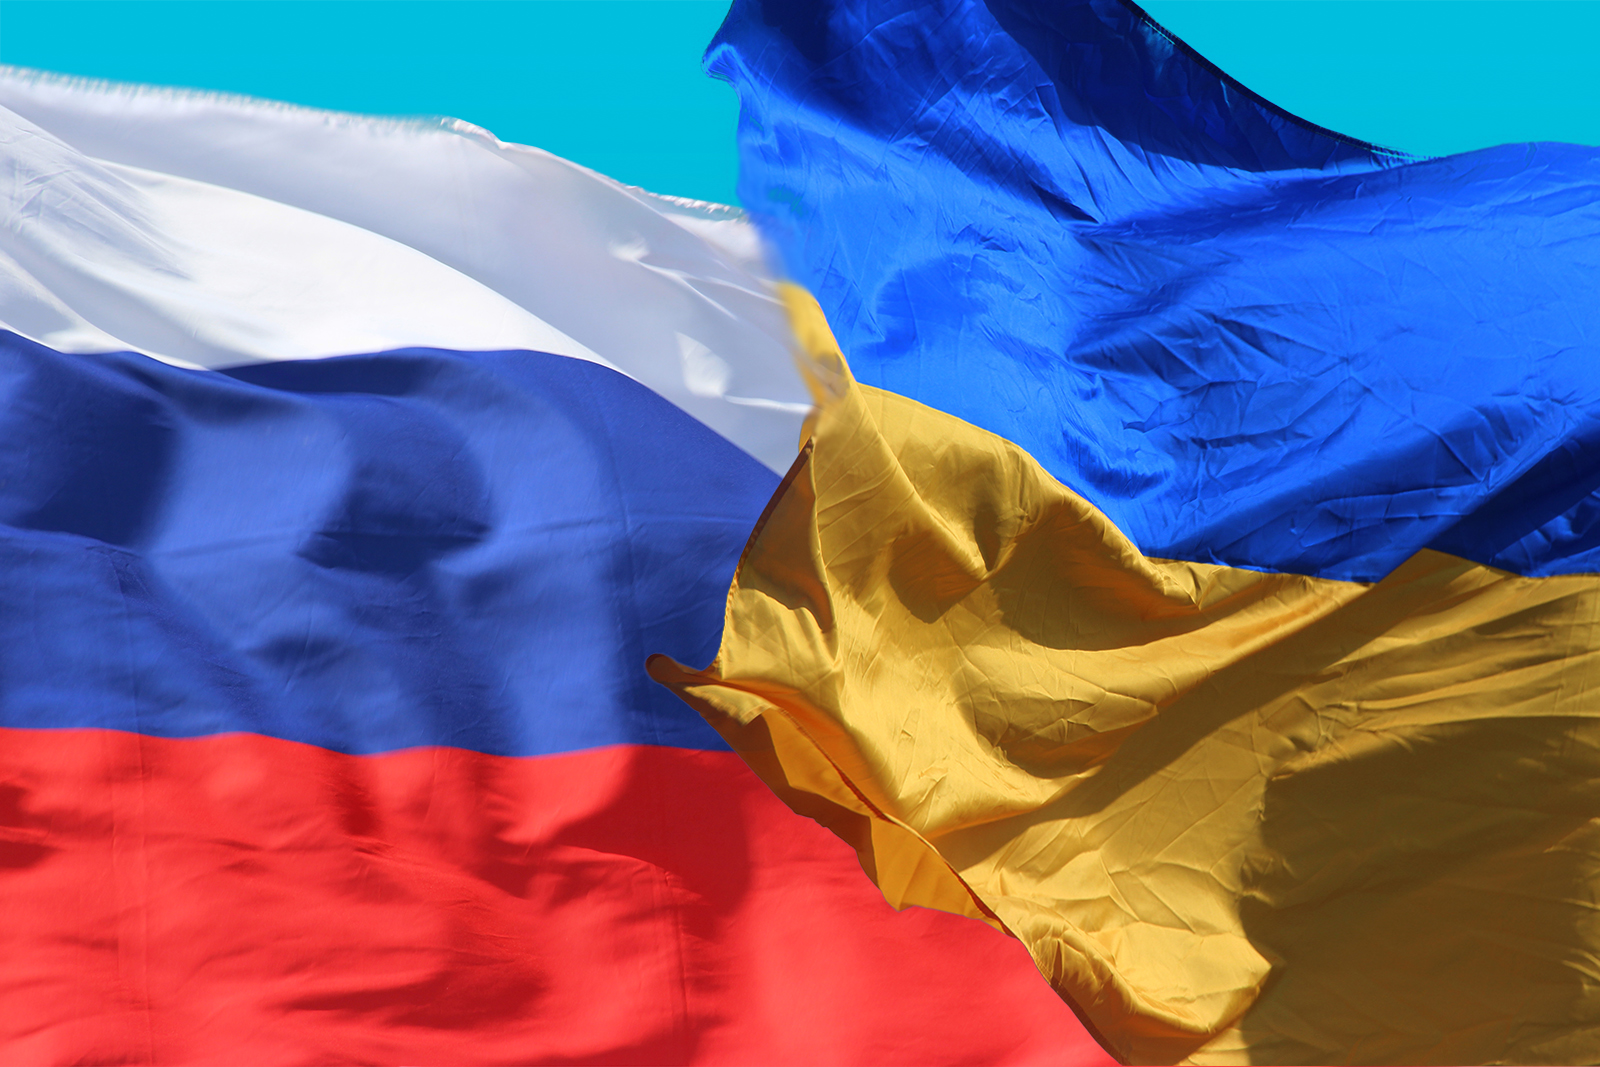 Политолог Безпалько: Если кто-то на Украине заявит о диалоге с Россией, он попадет под удар